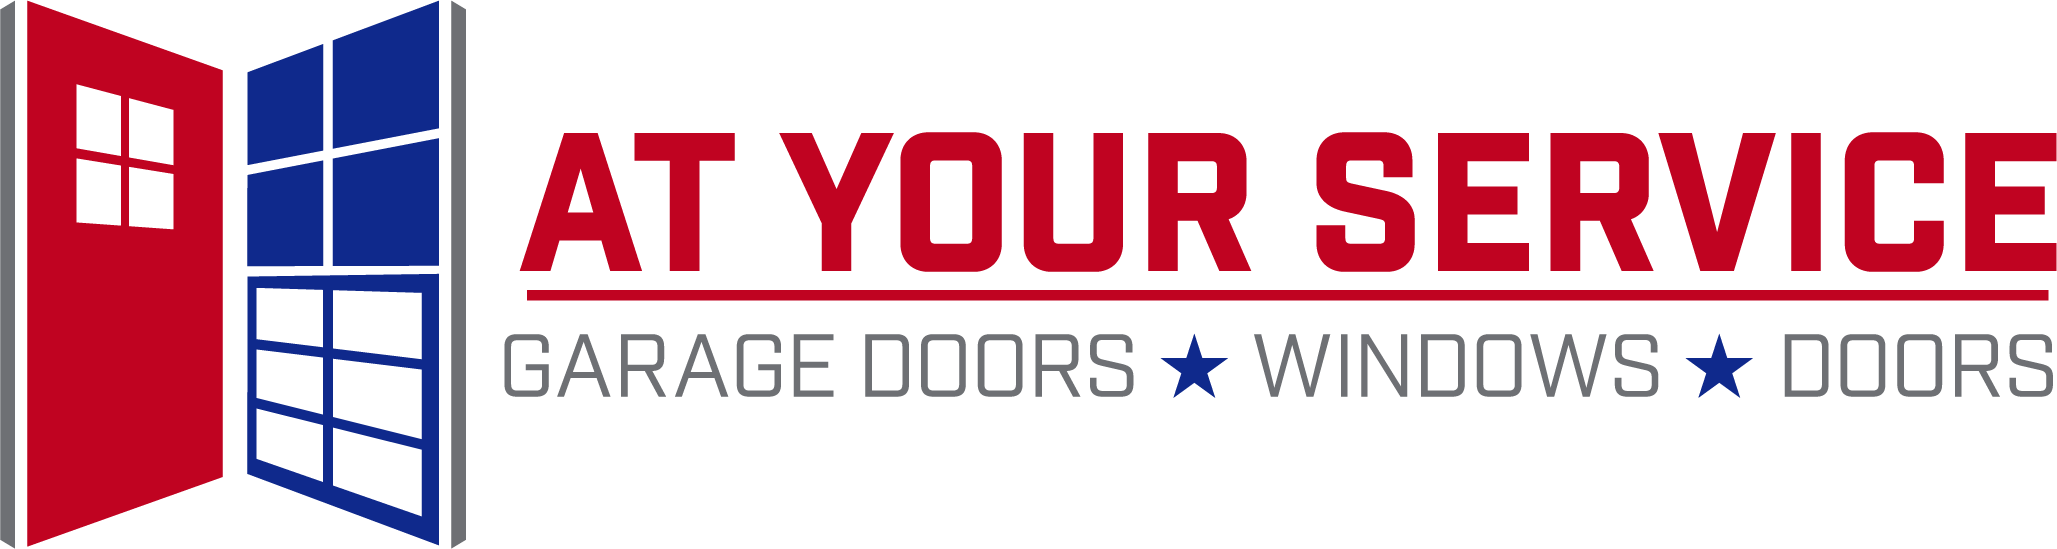 Garage Door Repair Ways Wear and Tear Leads to a Need for Garage Door Replacement